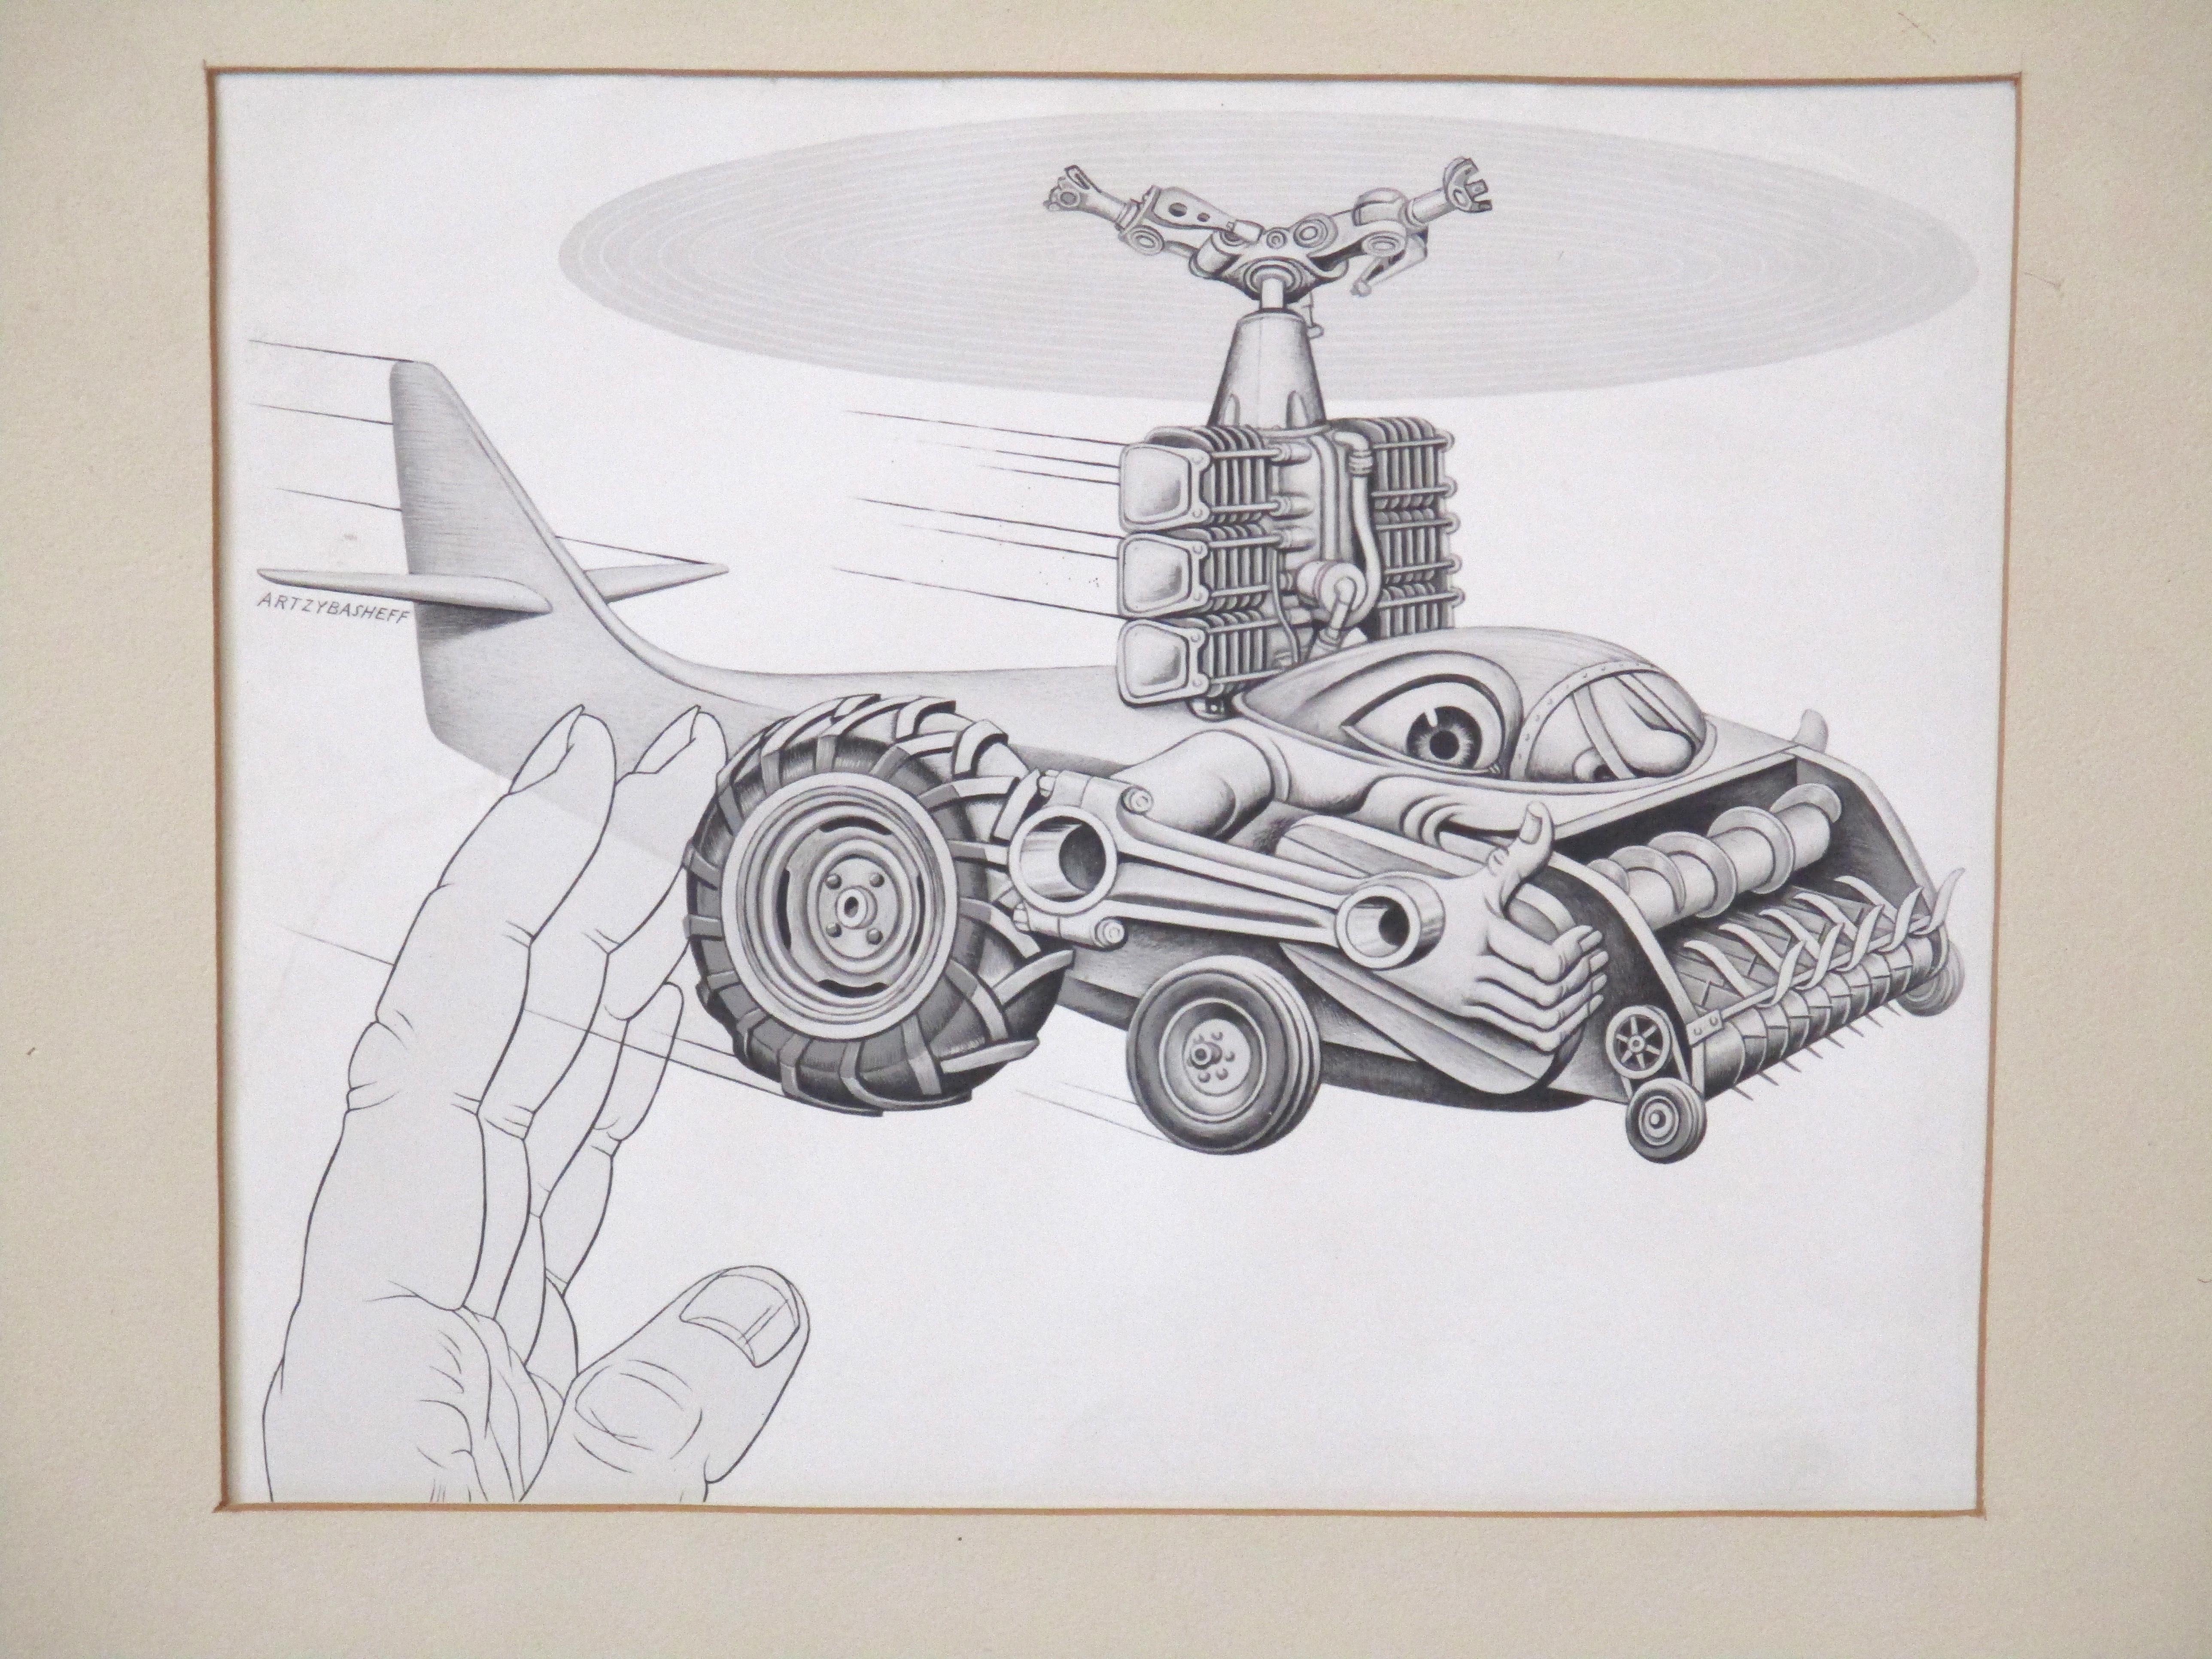 Boris Artzybasheff ( 1899 - 1965 ) fotofertiger Druck für eine Werbung für Lycoming / New Ideas Division Tractor Company aus dem Künstleratelier. Er wurde in Charkiw geboren und zog in die Vereinigten Staaten, wo er als Künstler für zahlreiche